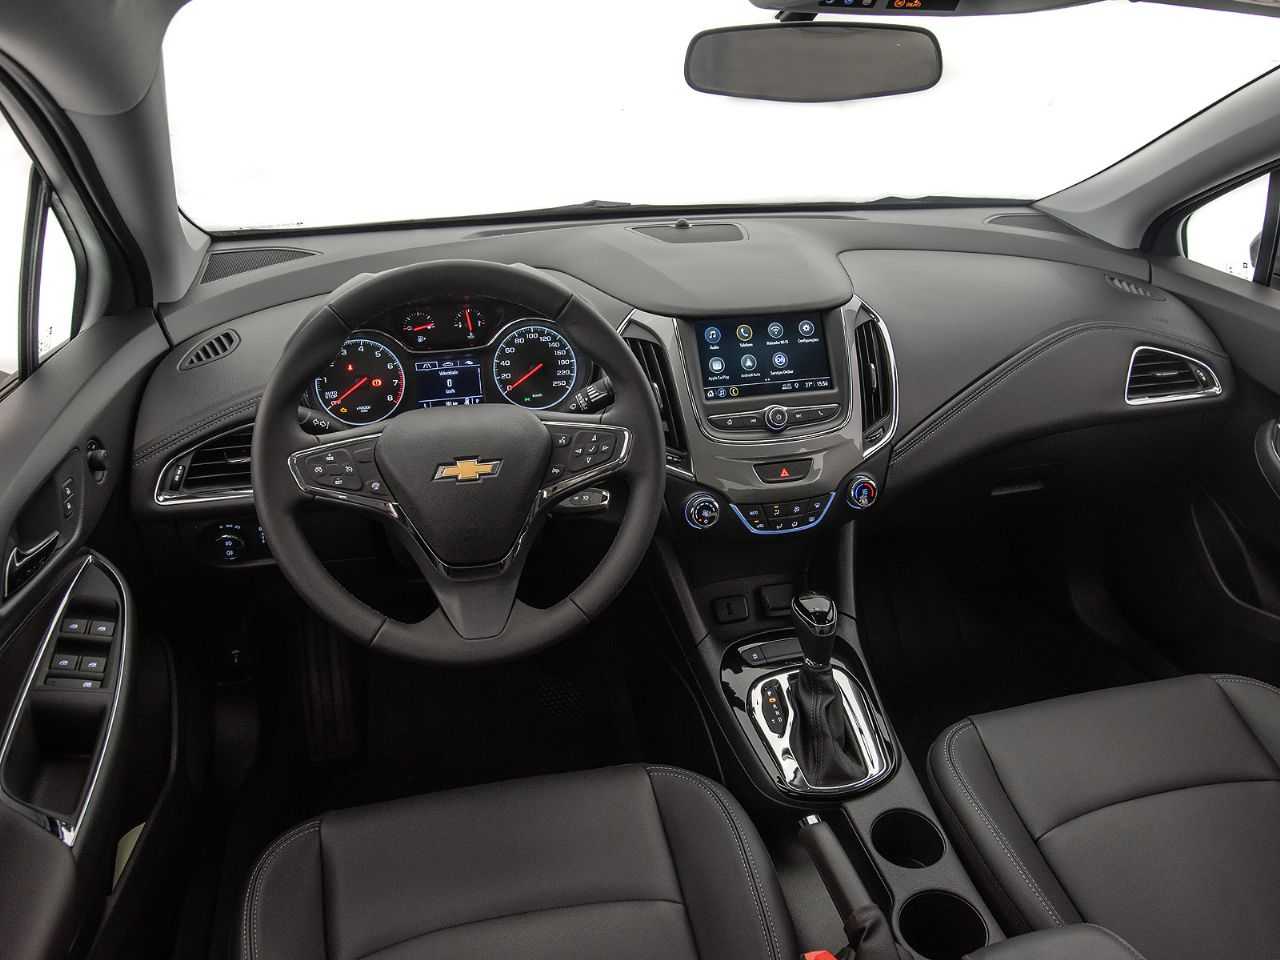 ChevroletCruze 2020 - painel